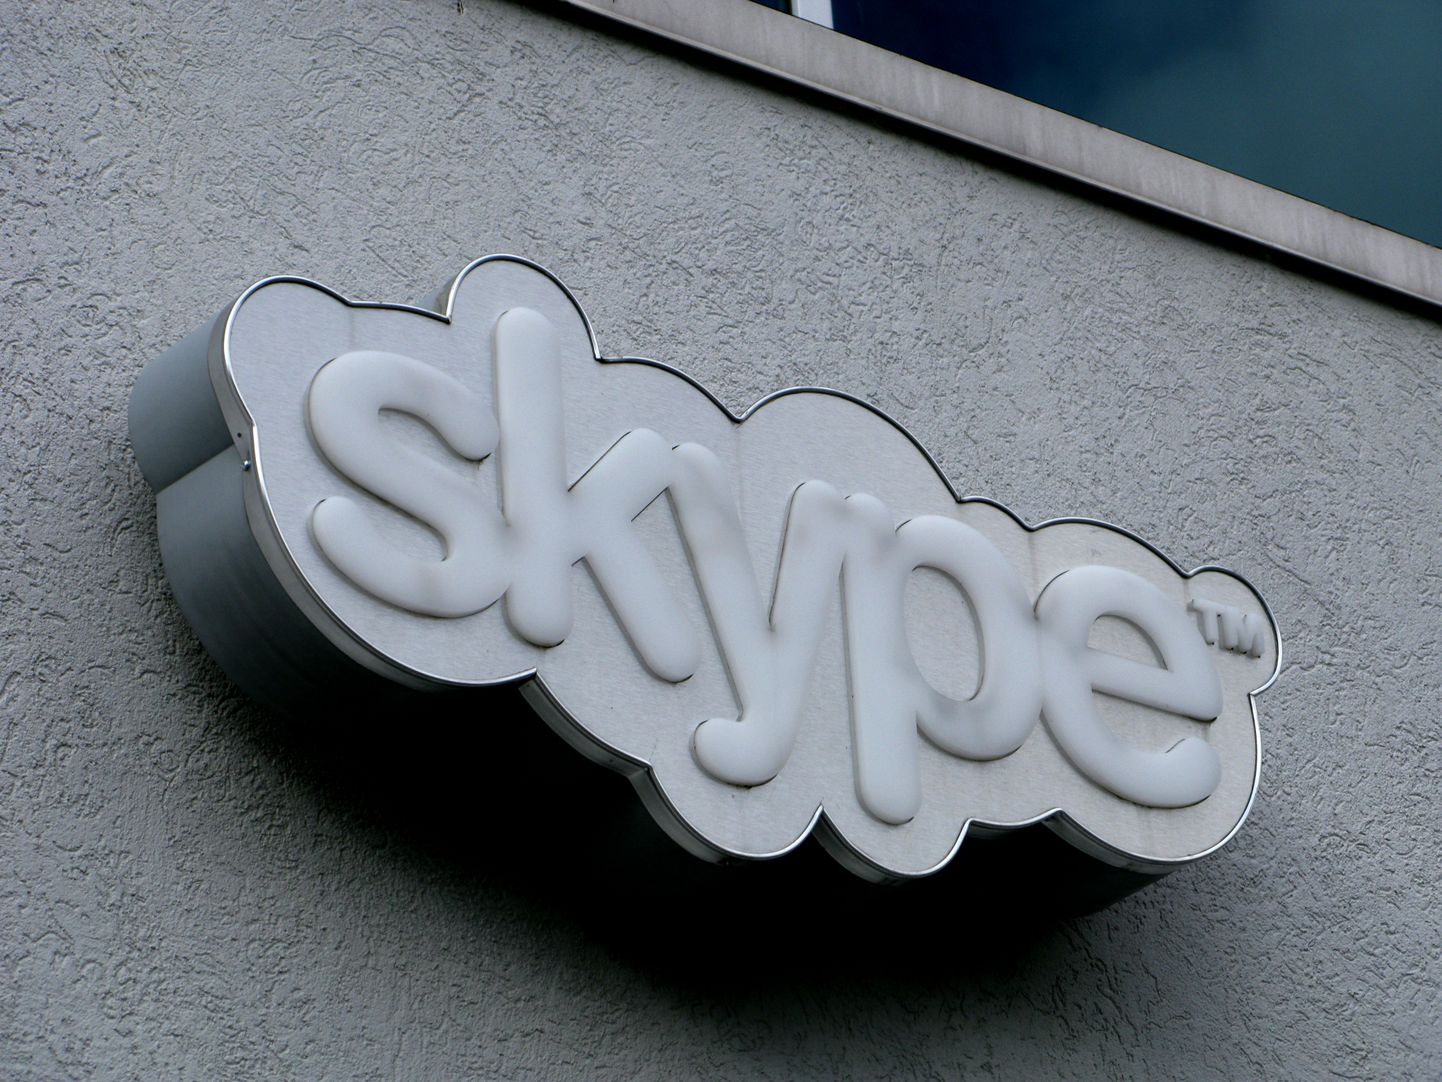 Eesti iduettevõtluse edule pani aluse Skype.